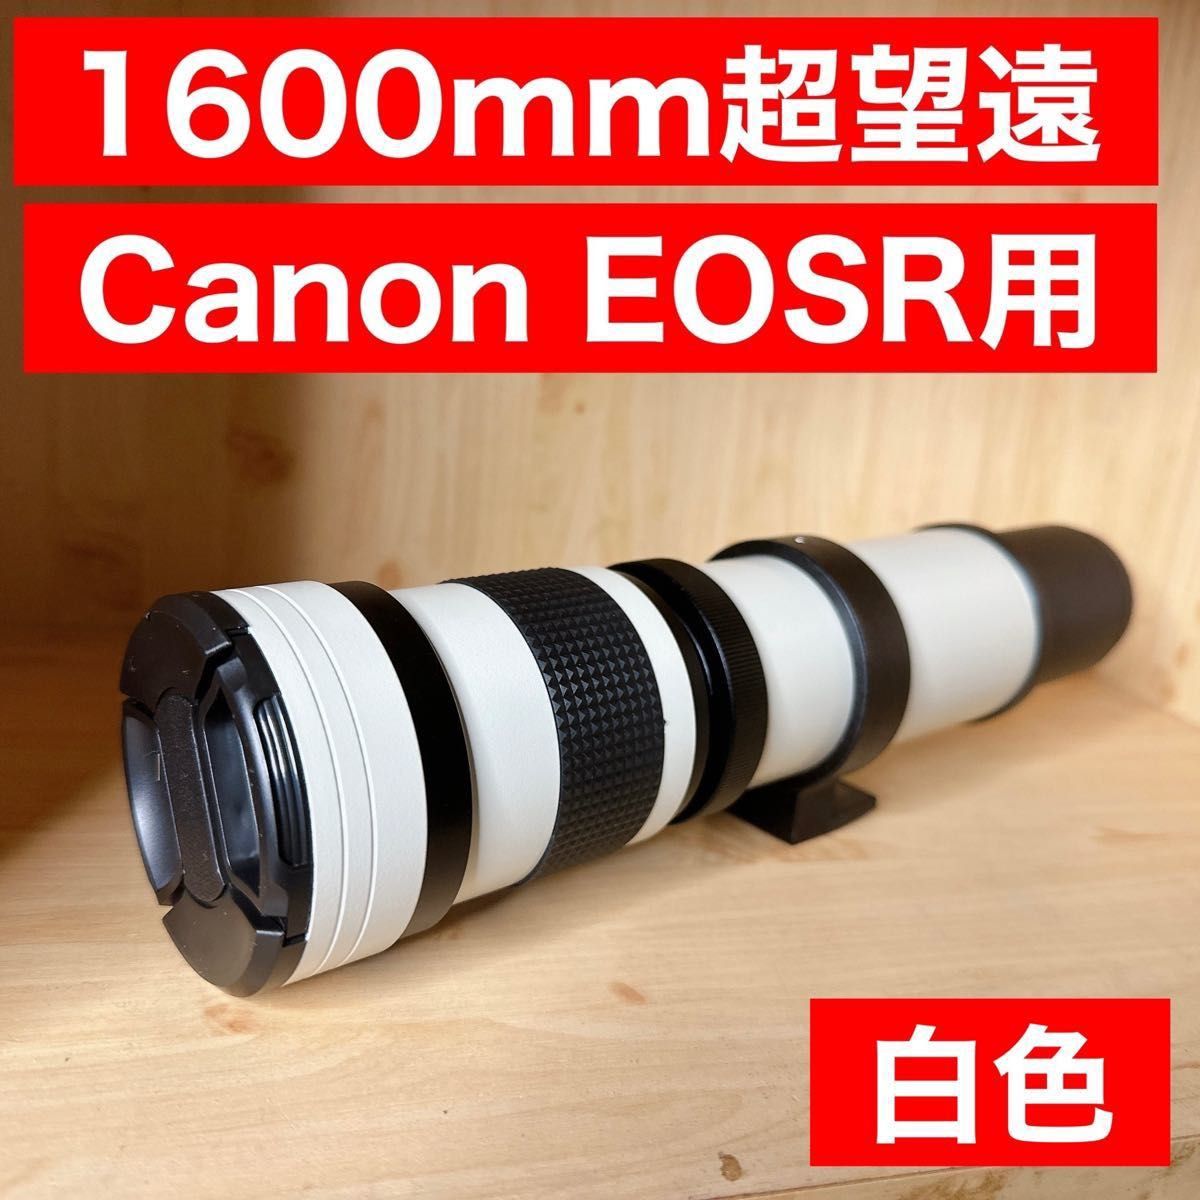 驚異の1600mm！！Canon EOSRシリーズ用！超望遠レンズ！これは凄い！美品！ホワイト！白い！白色！綺麗！サードパーティ製